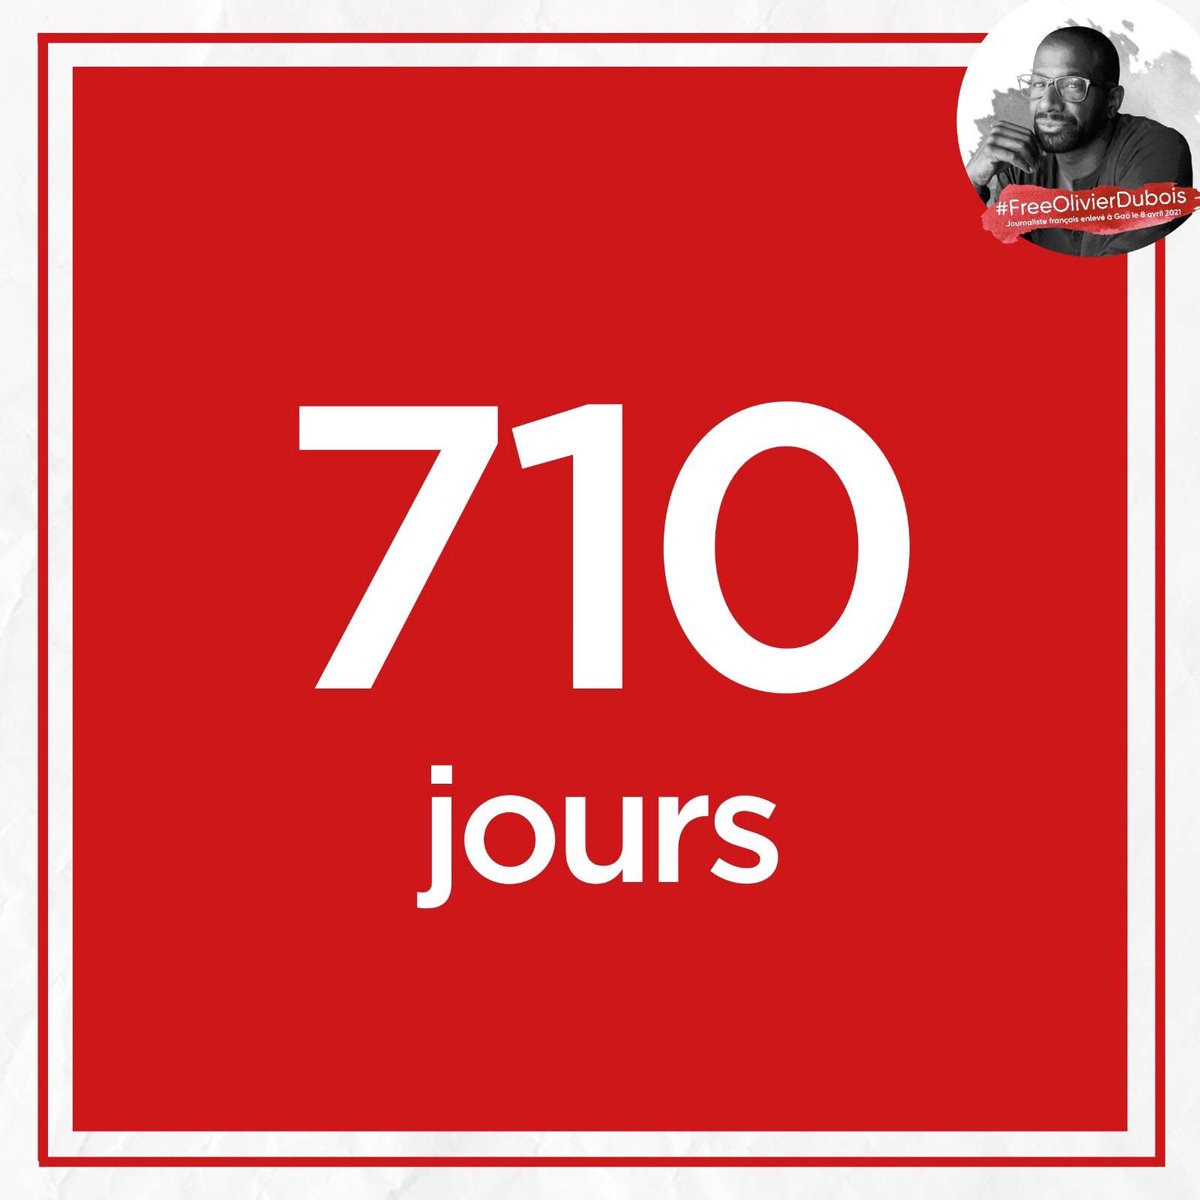 710 jours de trop. #FreeOlivierDubois #OlivierDubois #journalisme #journaliste #Presse #France #Mali